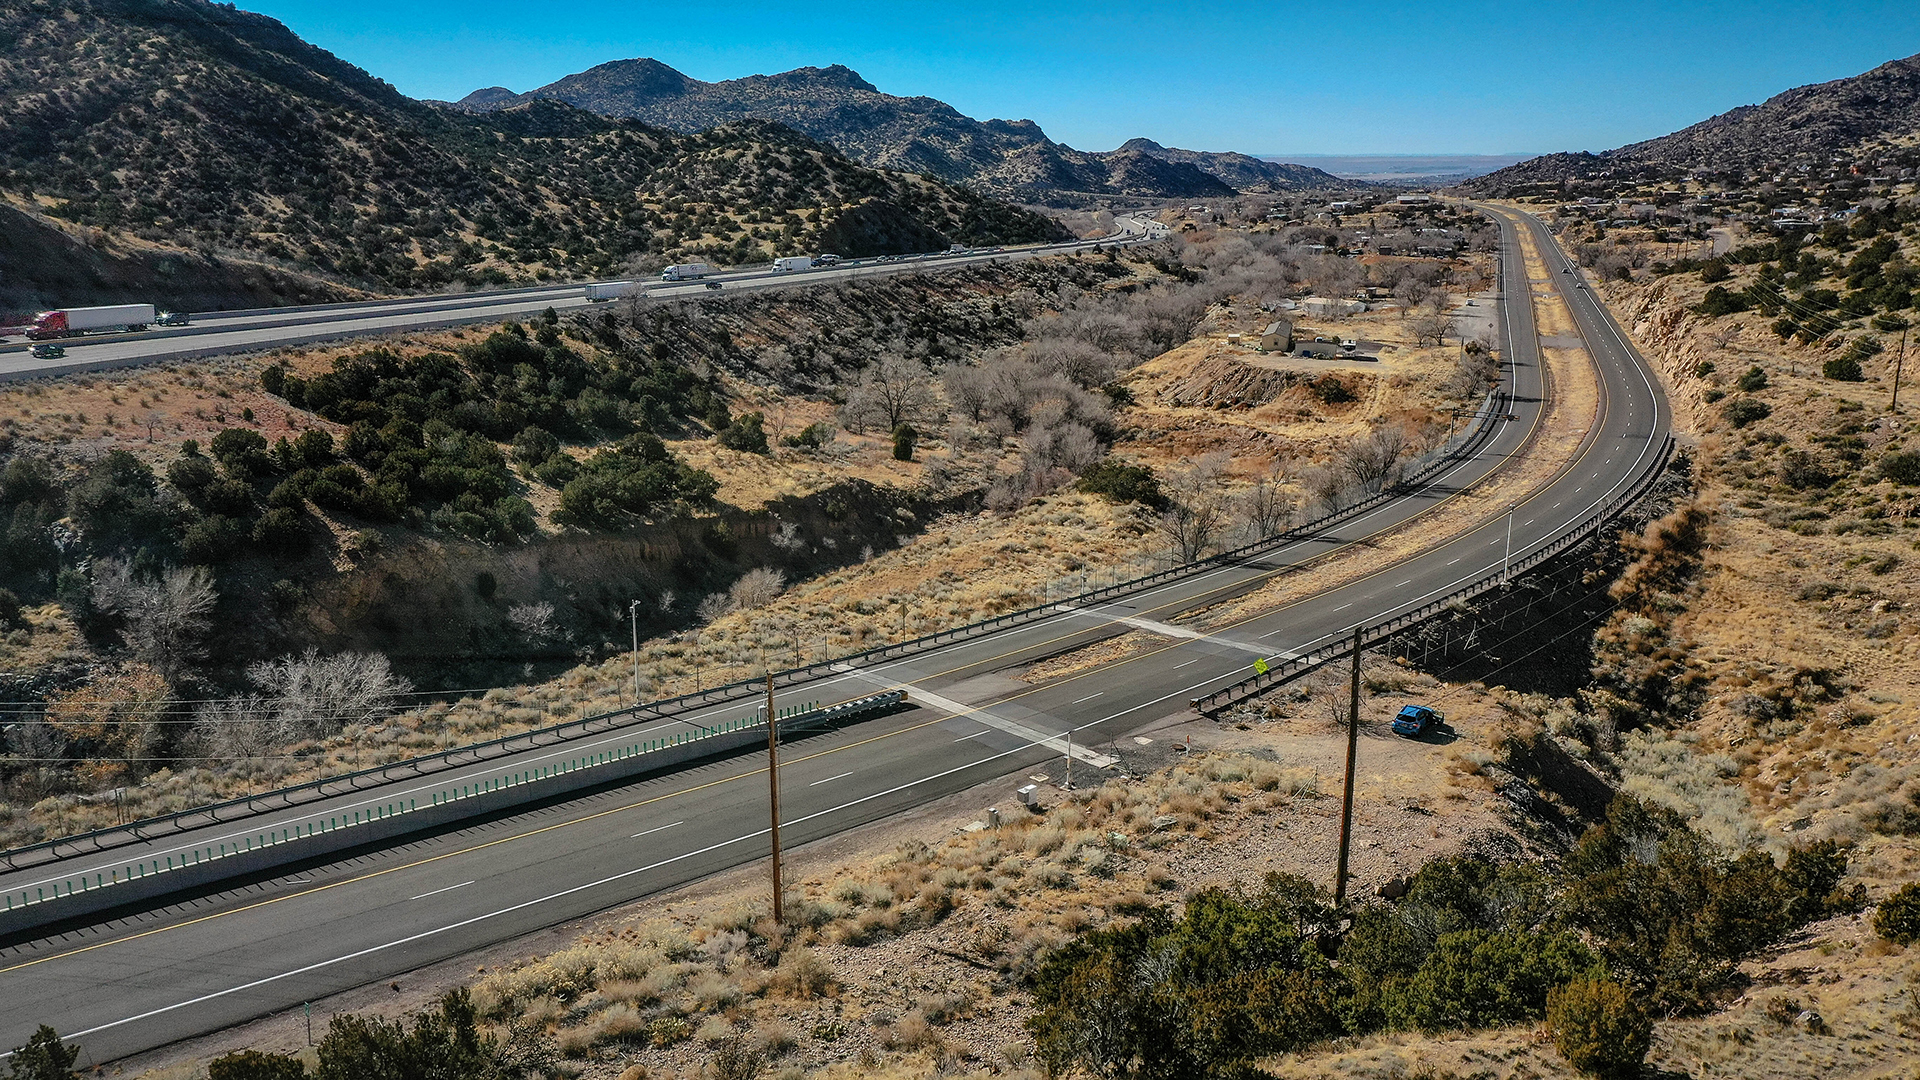 Highway in Carnuel in der Nähe von Albuquerque | picture alliance / ZUMAPRESS.com